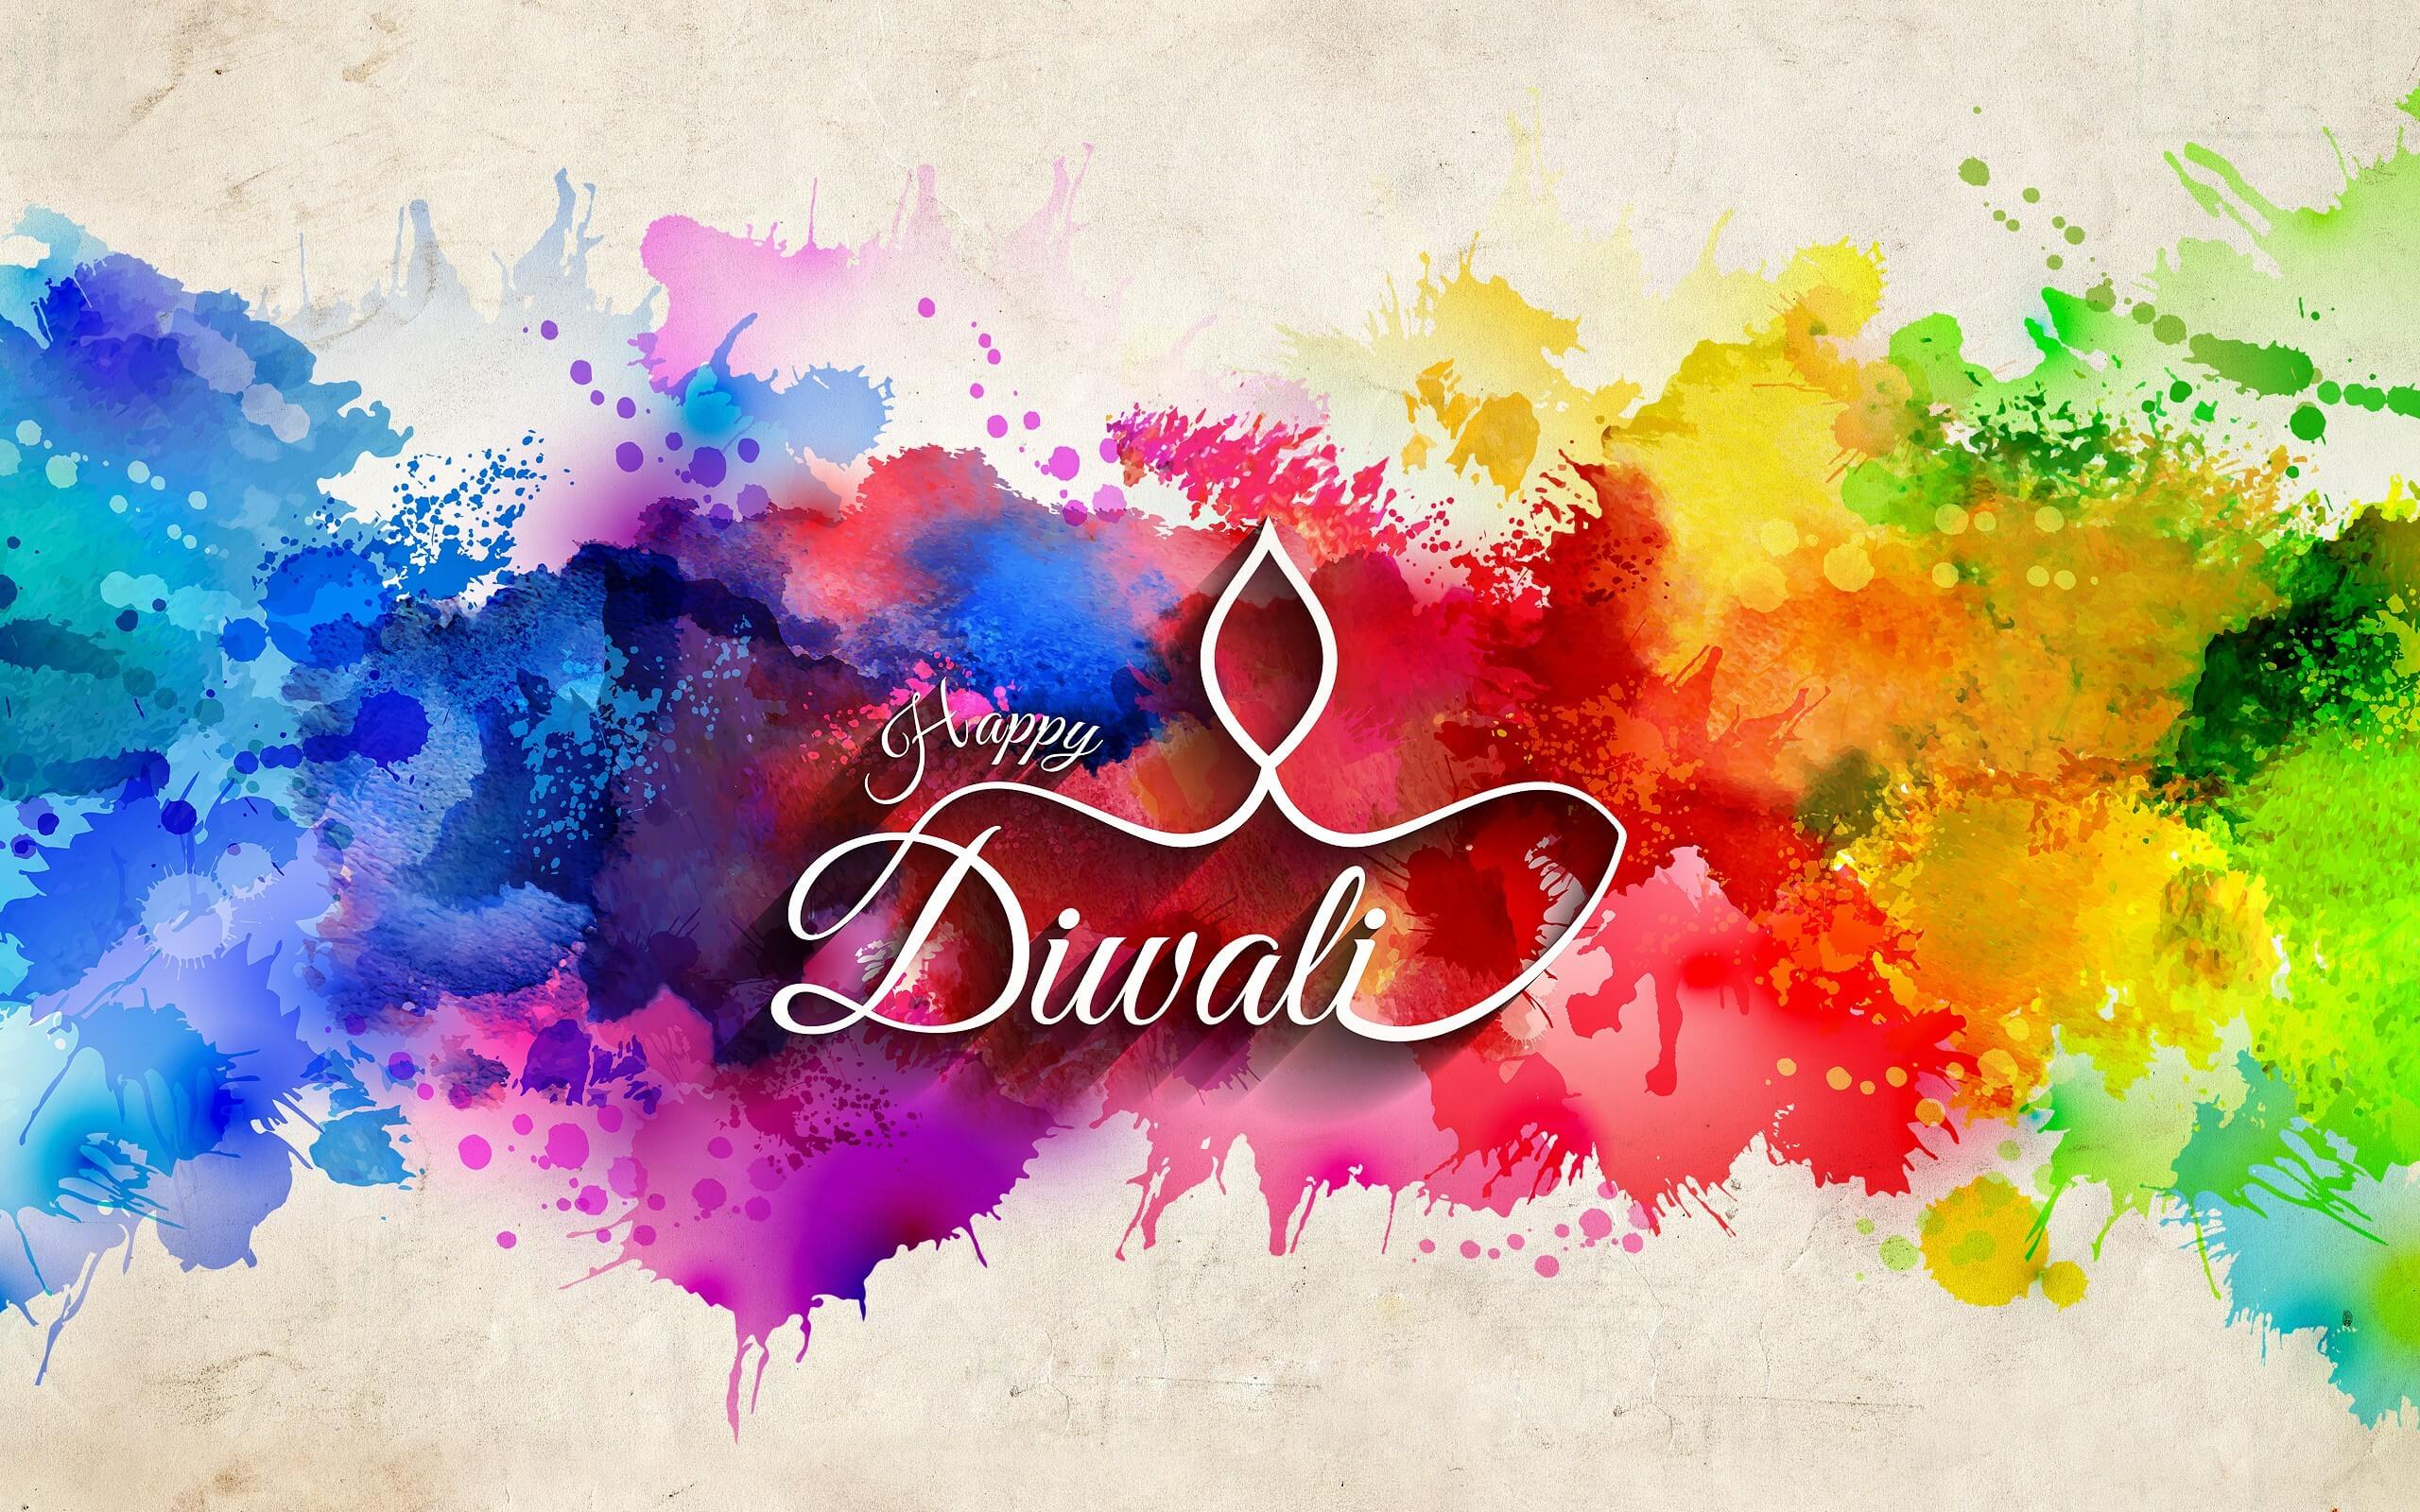 diwali wallpaper per cellulare,pittura ad acquerello,testo,disegno grafico,font,illustrazione